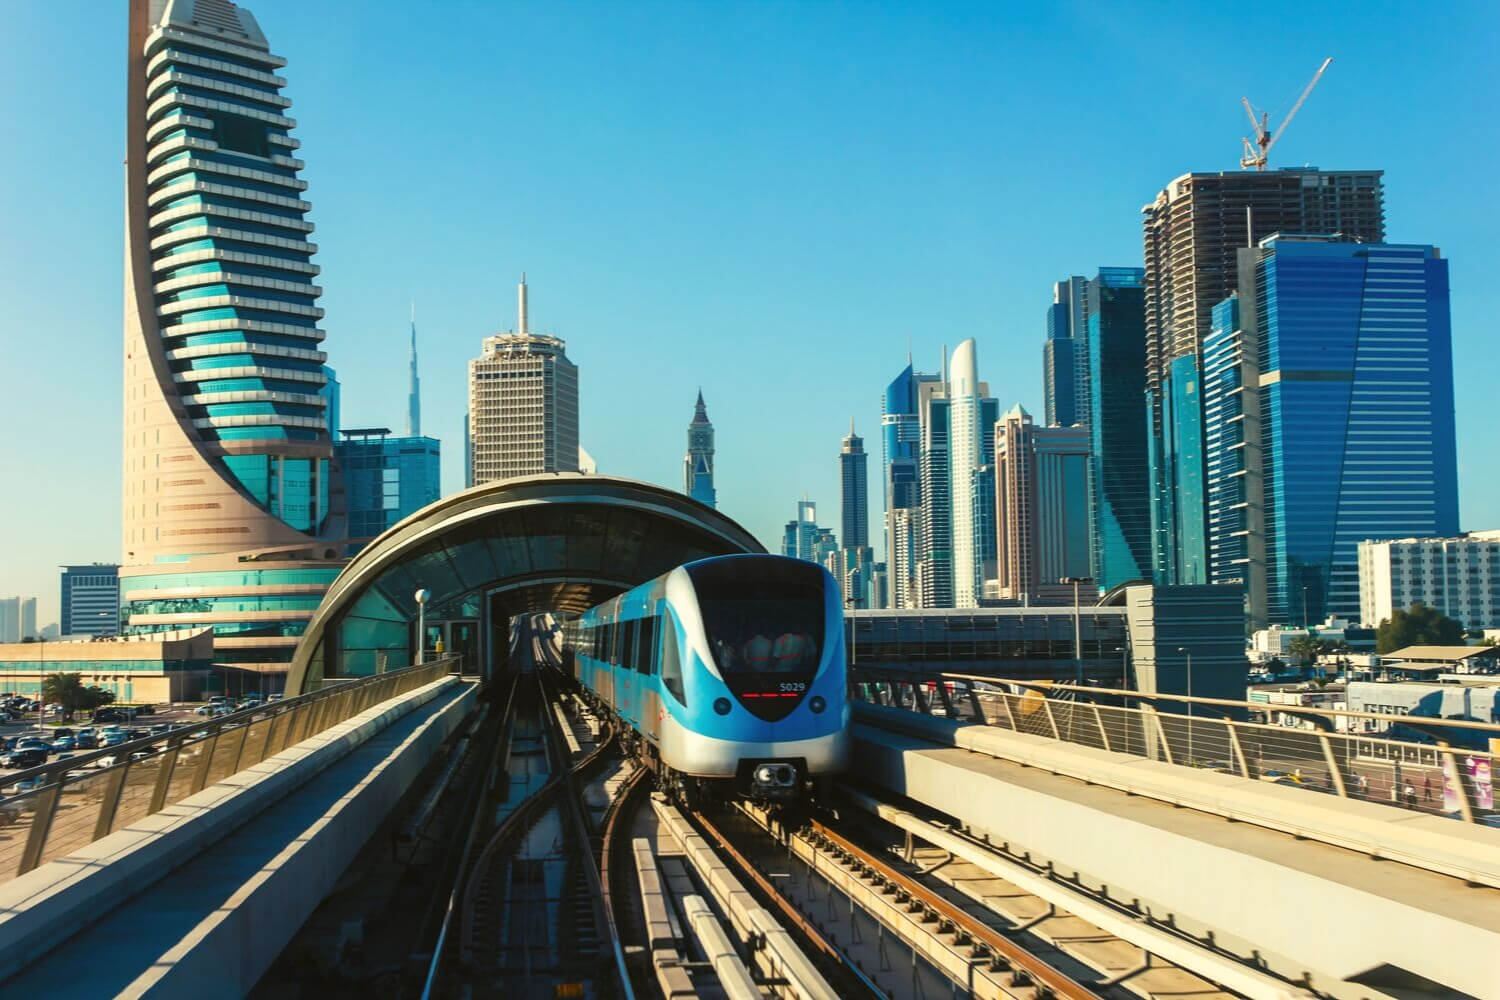 Dubai Metro traini leaving a station